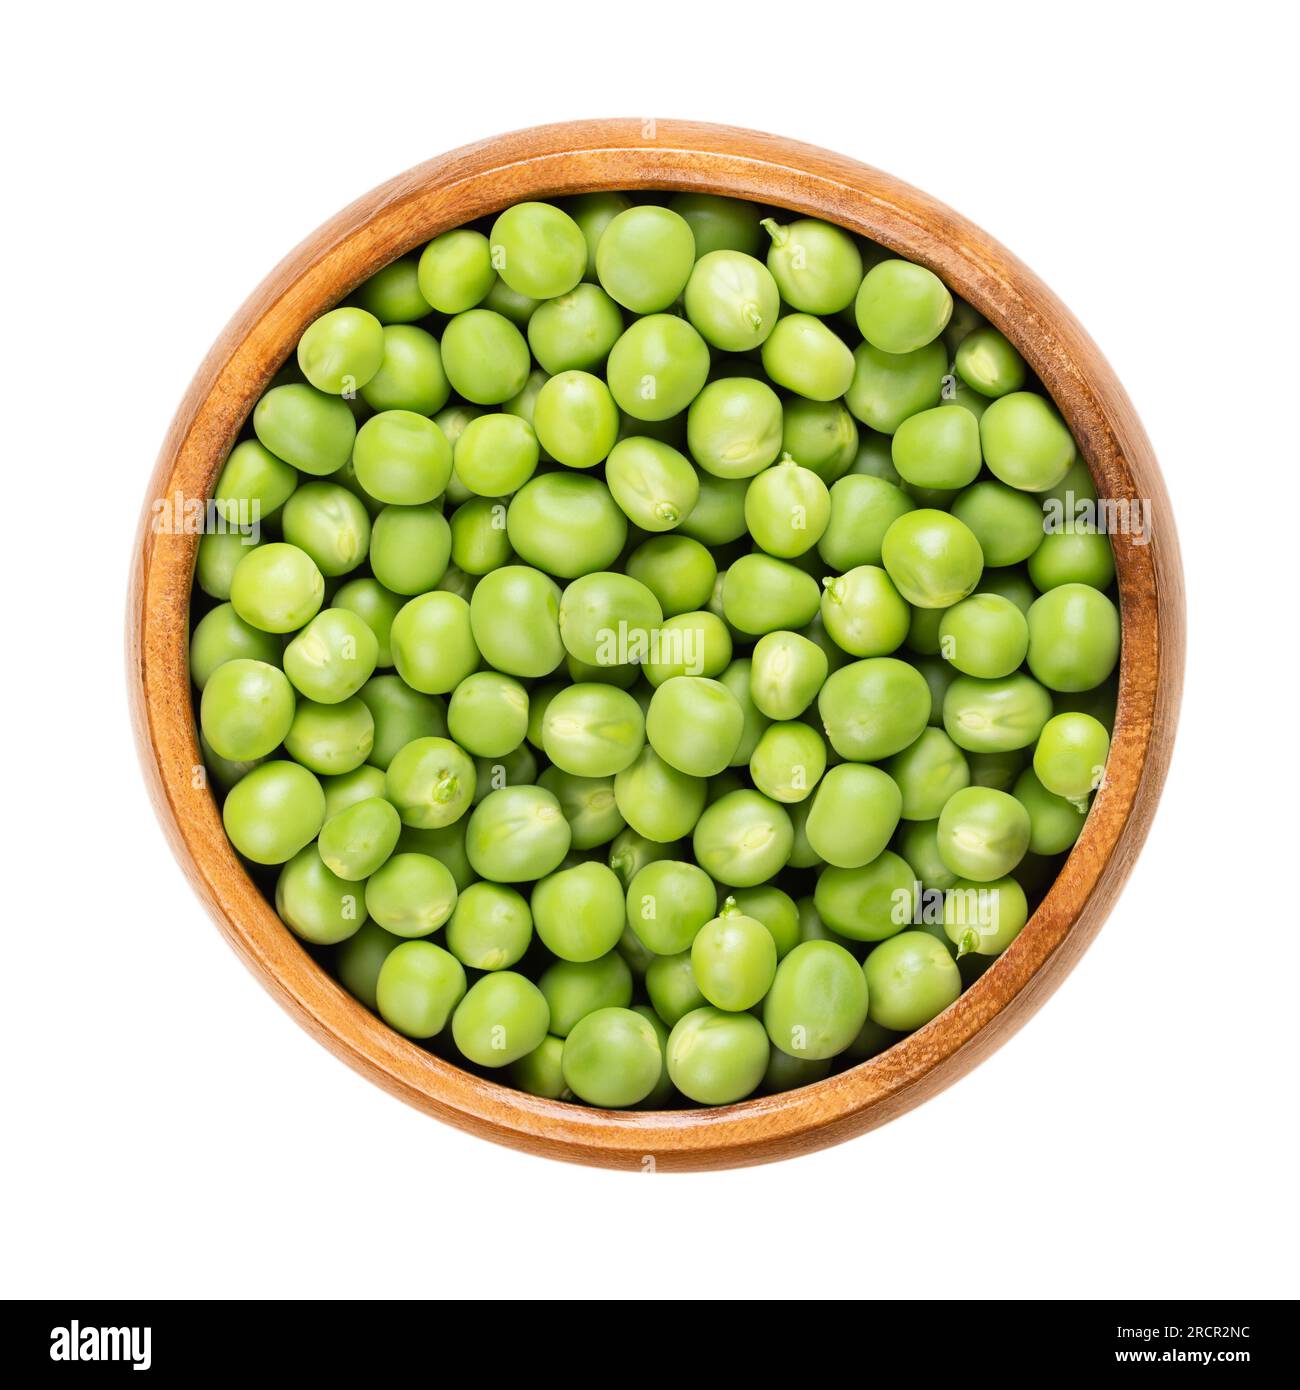 Pois verts frais, dans un bol en bois. Crues, petites graines sphériques du fruit de gousse Pisum sativum de couleur verdâtre et jaunâtre, principalement utilisées pour les soupes. Banque D'Images